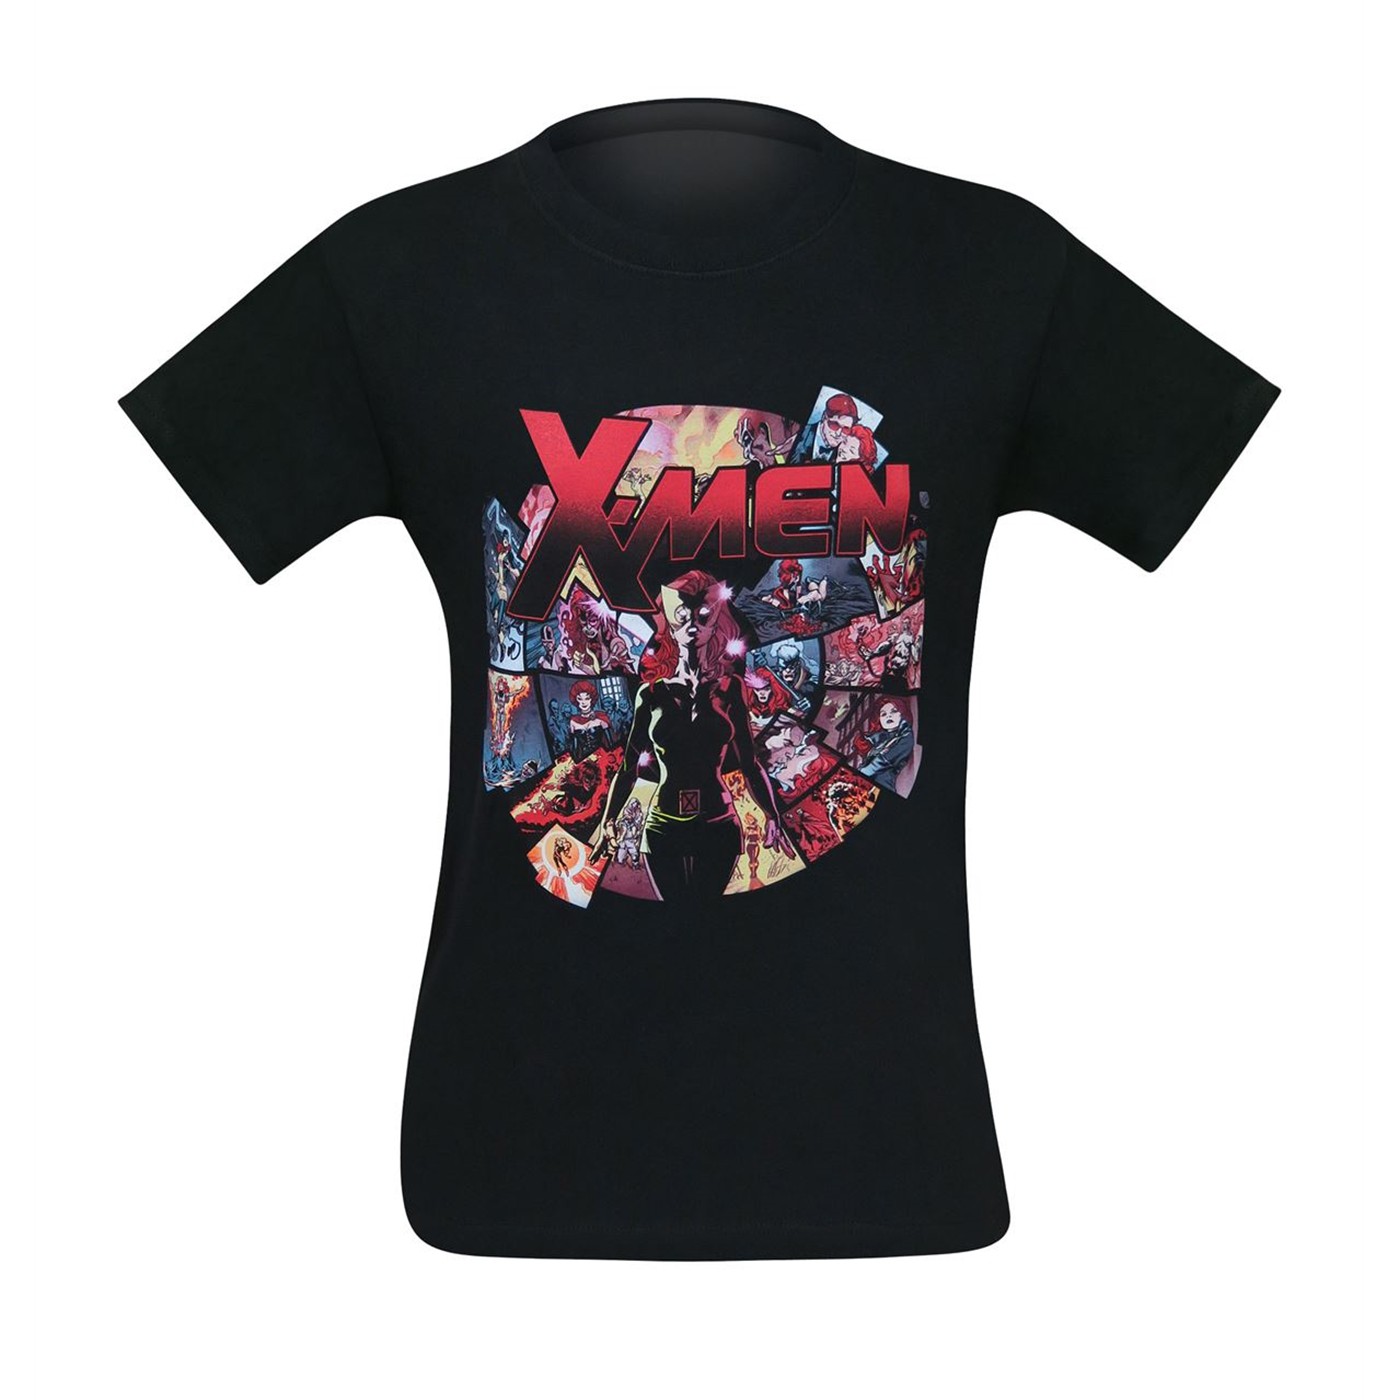 X-Men Jean Grey Memories Men's T-Shirt